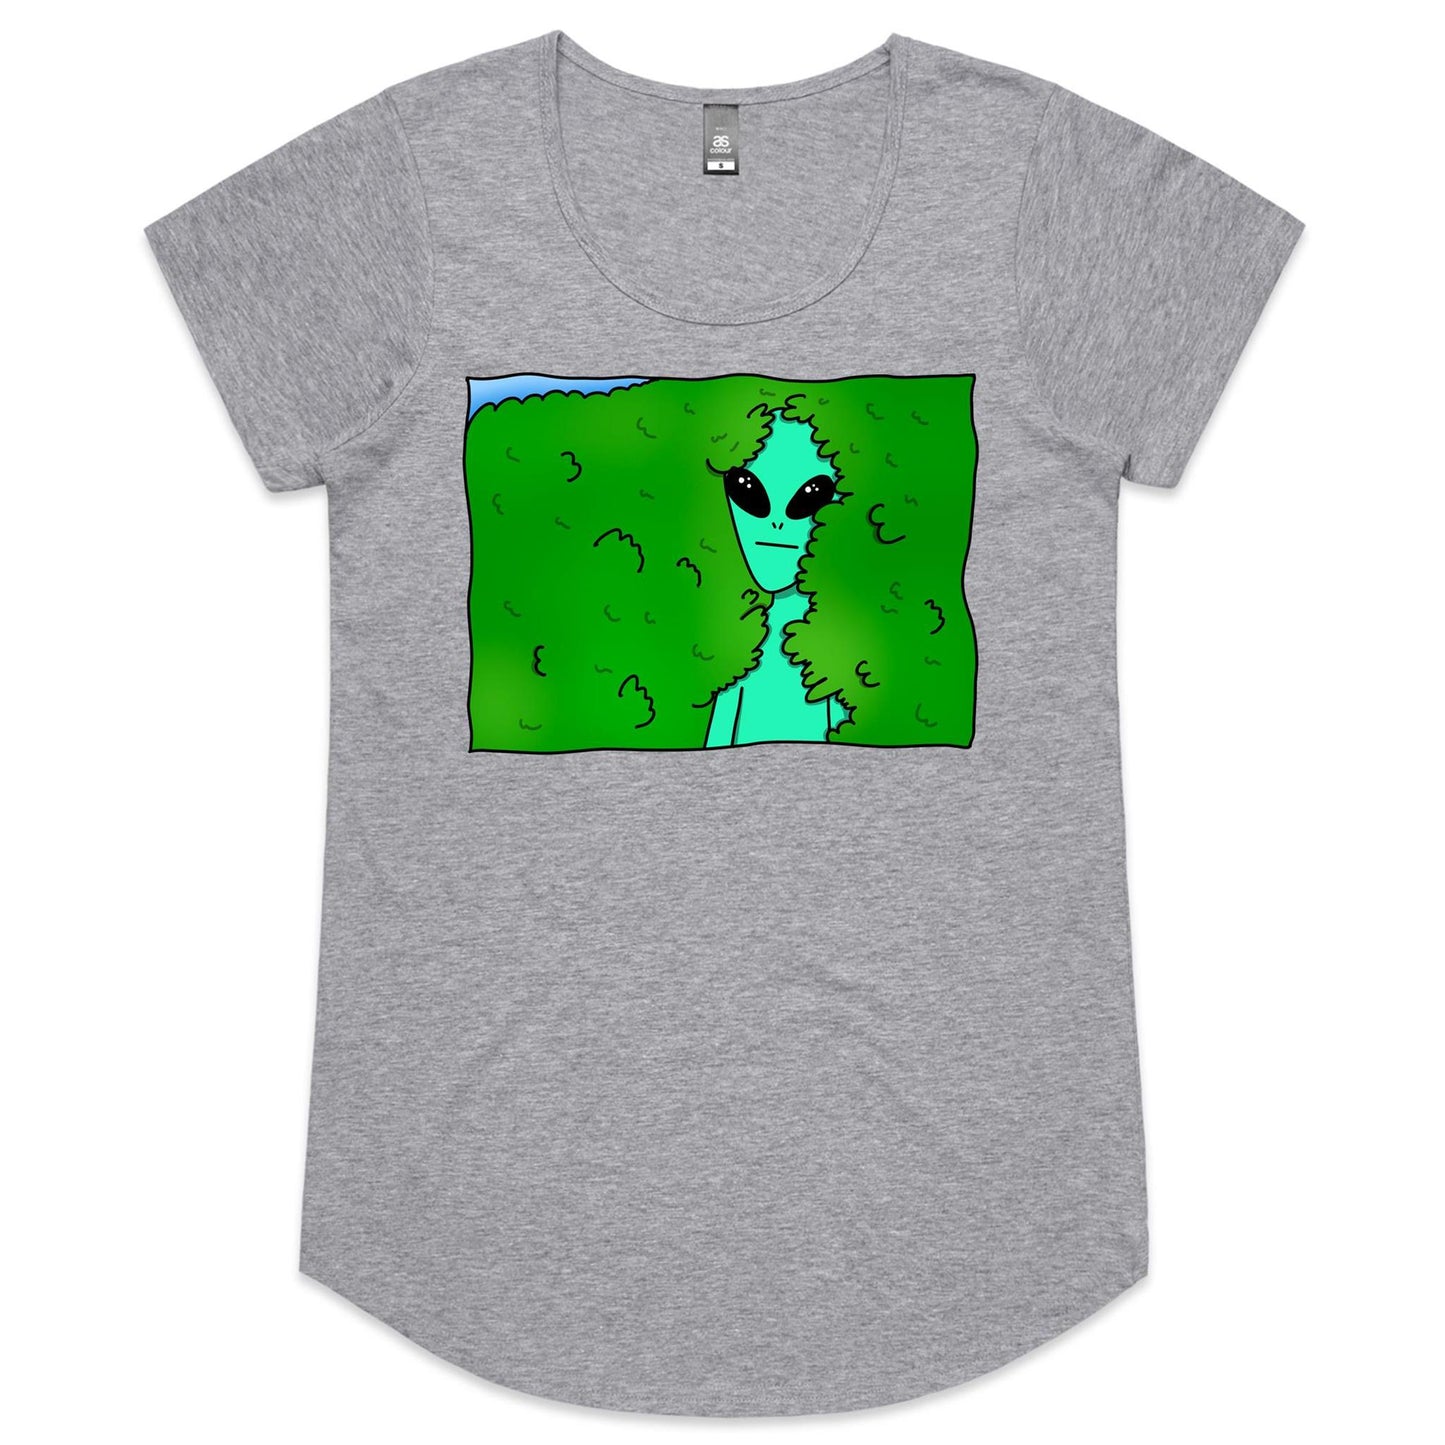 Alien Backing Into Hedge Meme - Womens Scoop Neck T-Shirt Grey Marle Womens Scoop Neck T-shirt Funny Sci Fi